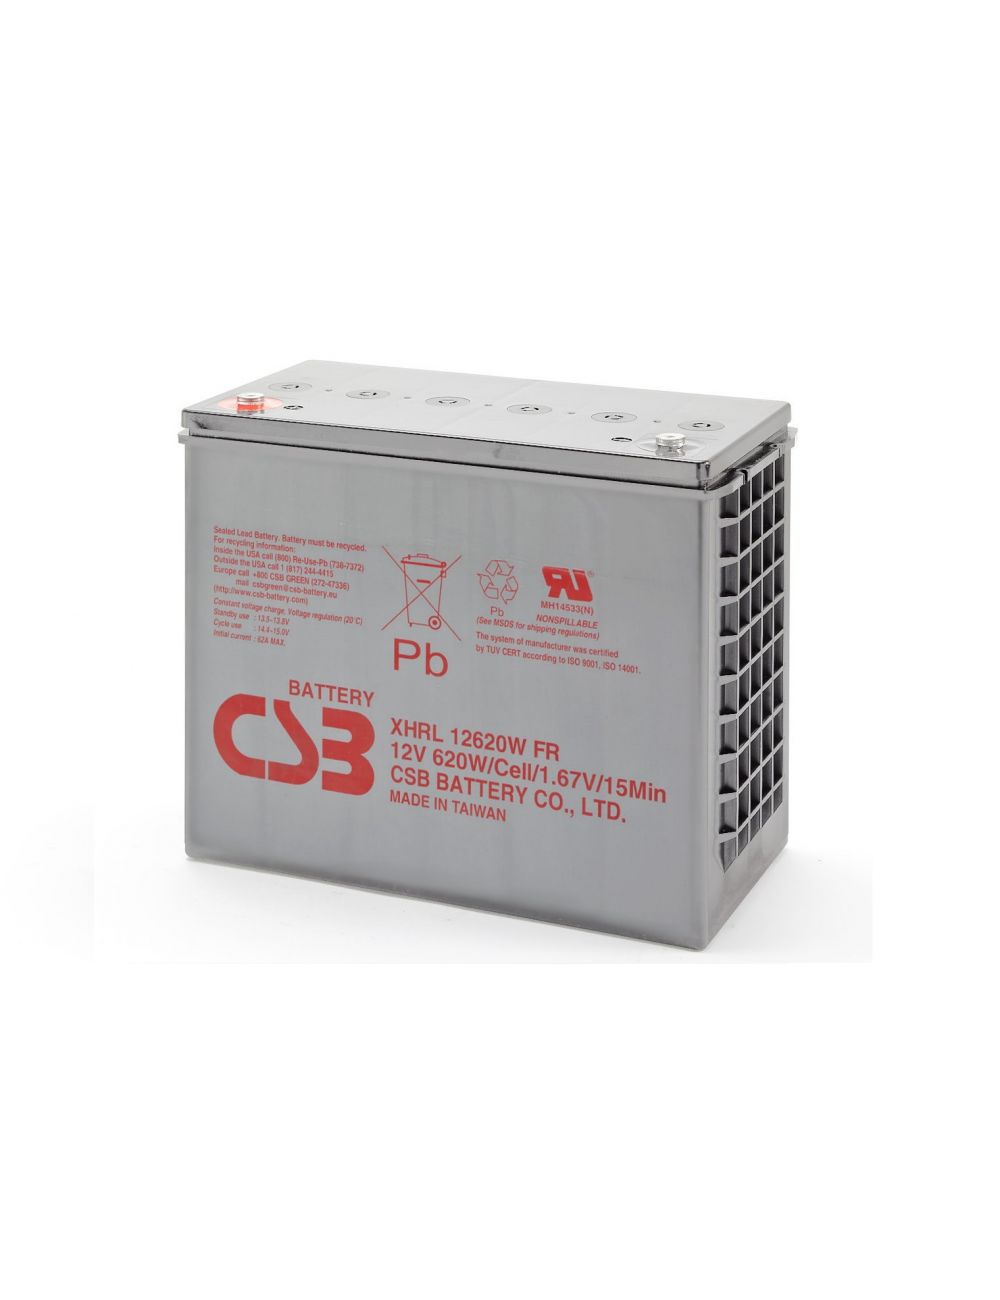 Batería 12V 620W/celda CSB serie XHRL - 1